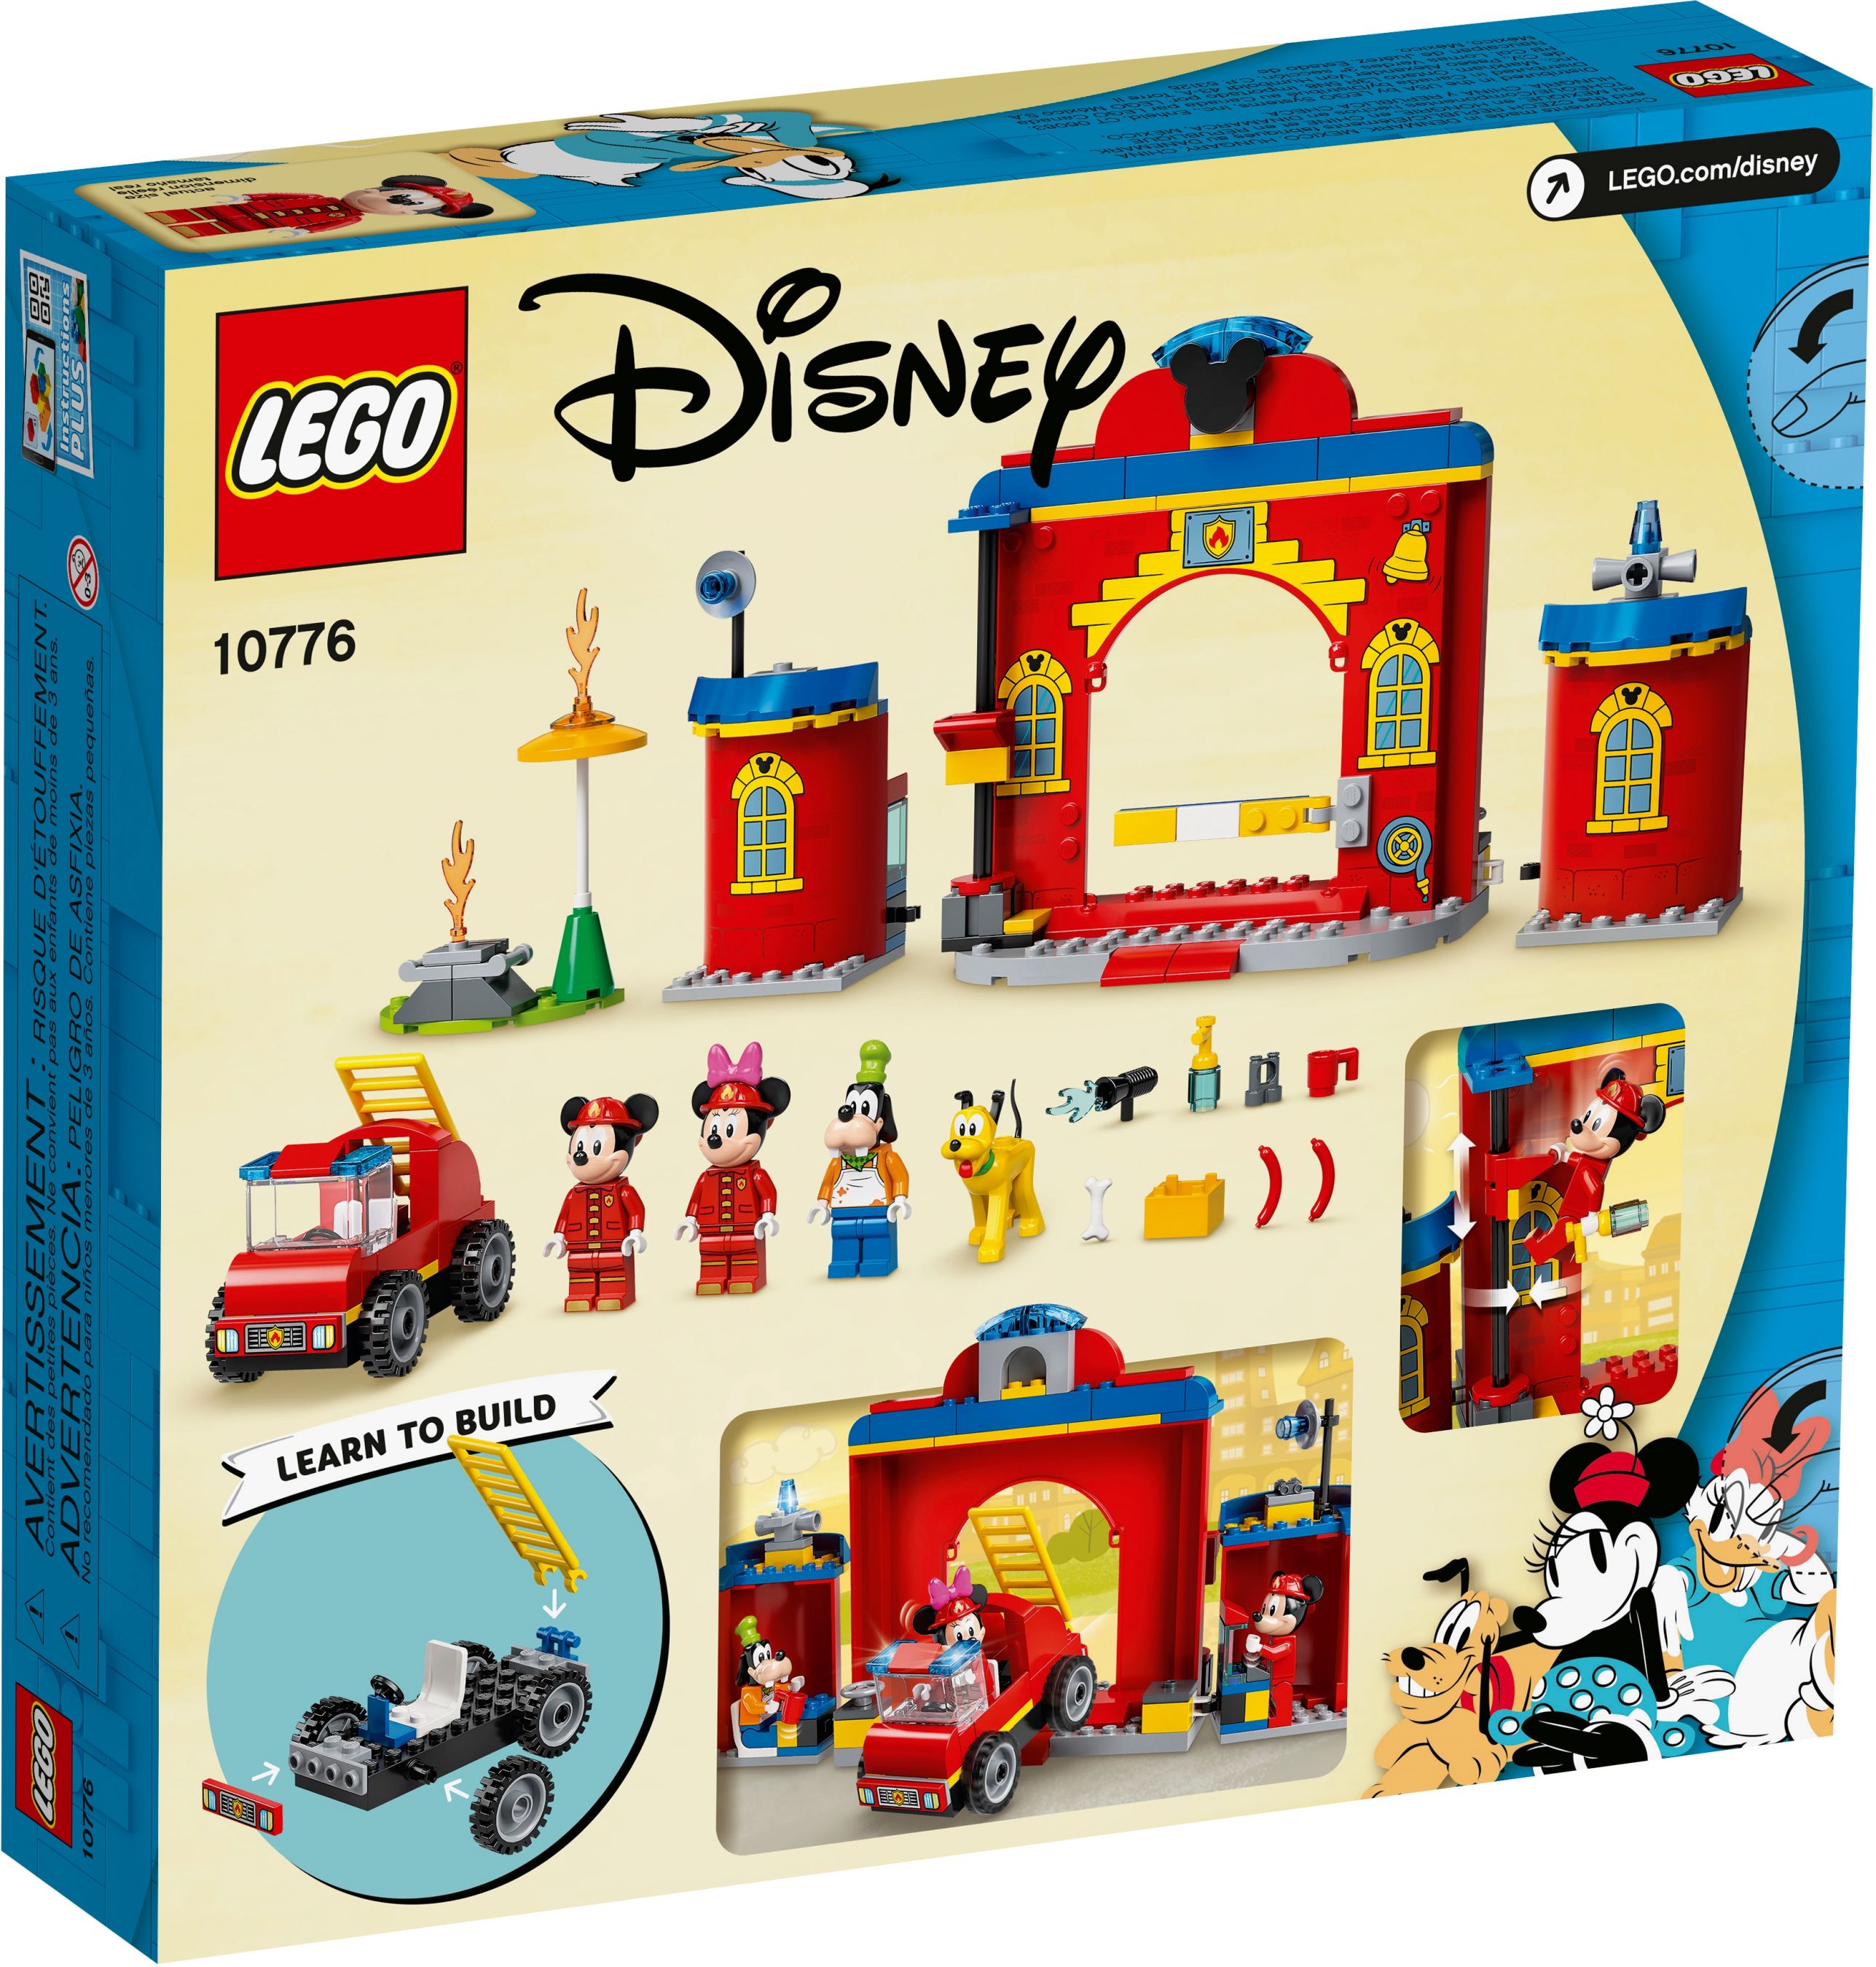 LEGO Disney 10776 Mickys Feuerwehrstation und Feuerwehrauto LEGO_10776_alt6.jpg